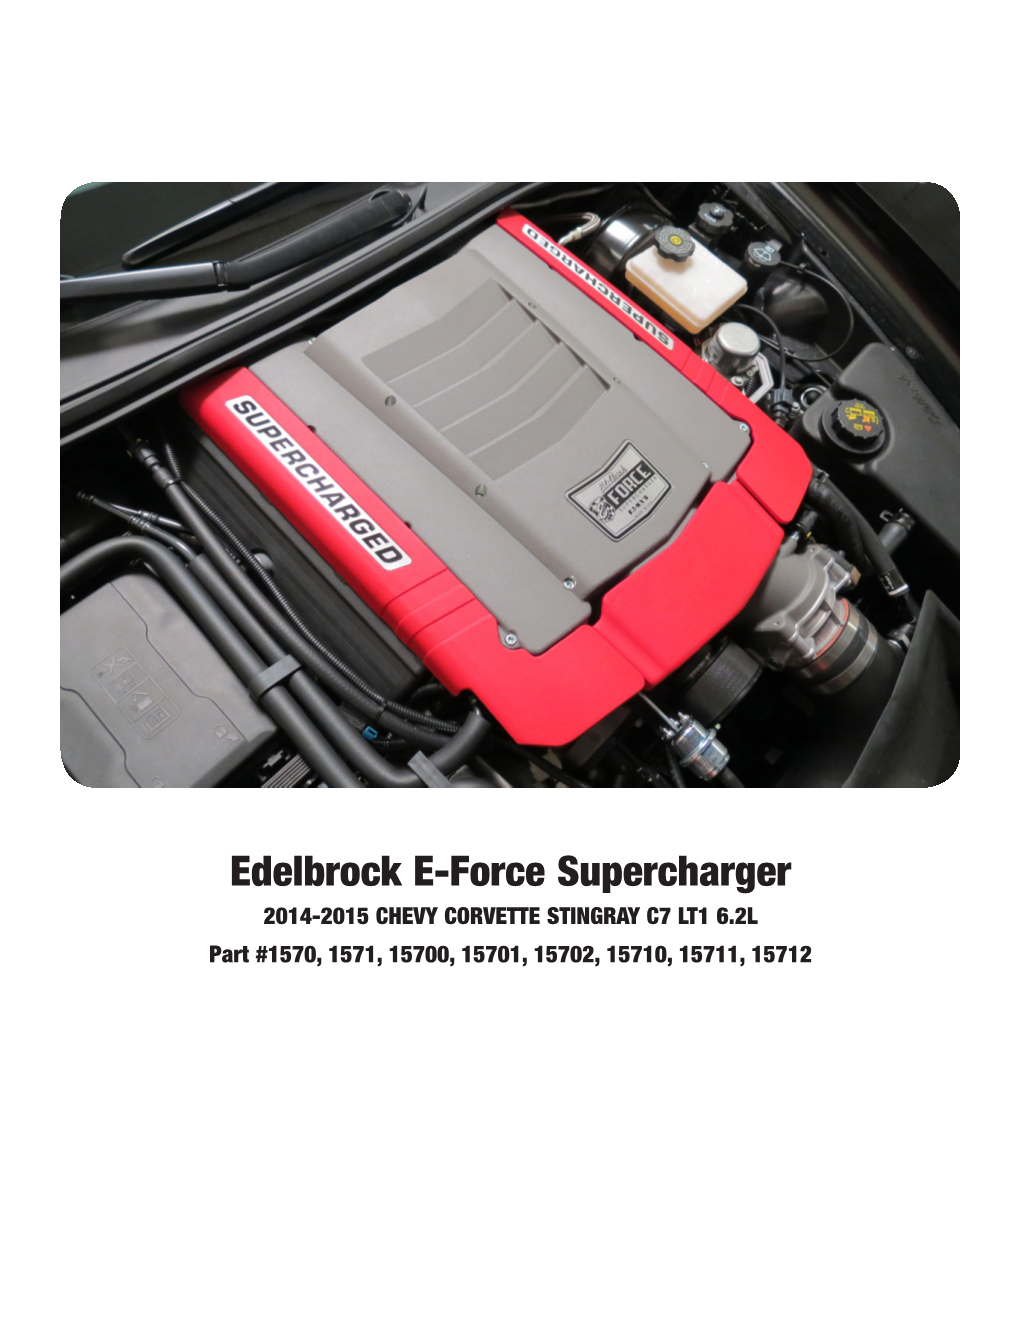 Edelbrock E-Force Supercharger 2014-2015 CHEVY CORVETTE STINGRAY C7 LT1 6.2L Part #1570, 1571, 15700, 15701, 15702, 15710, 15711, 15712